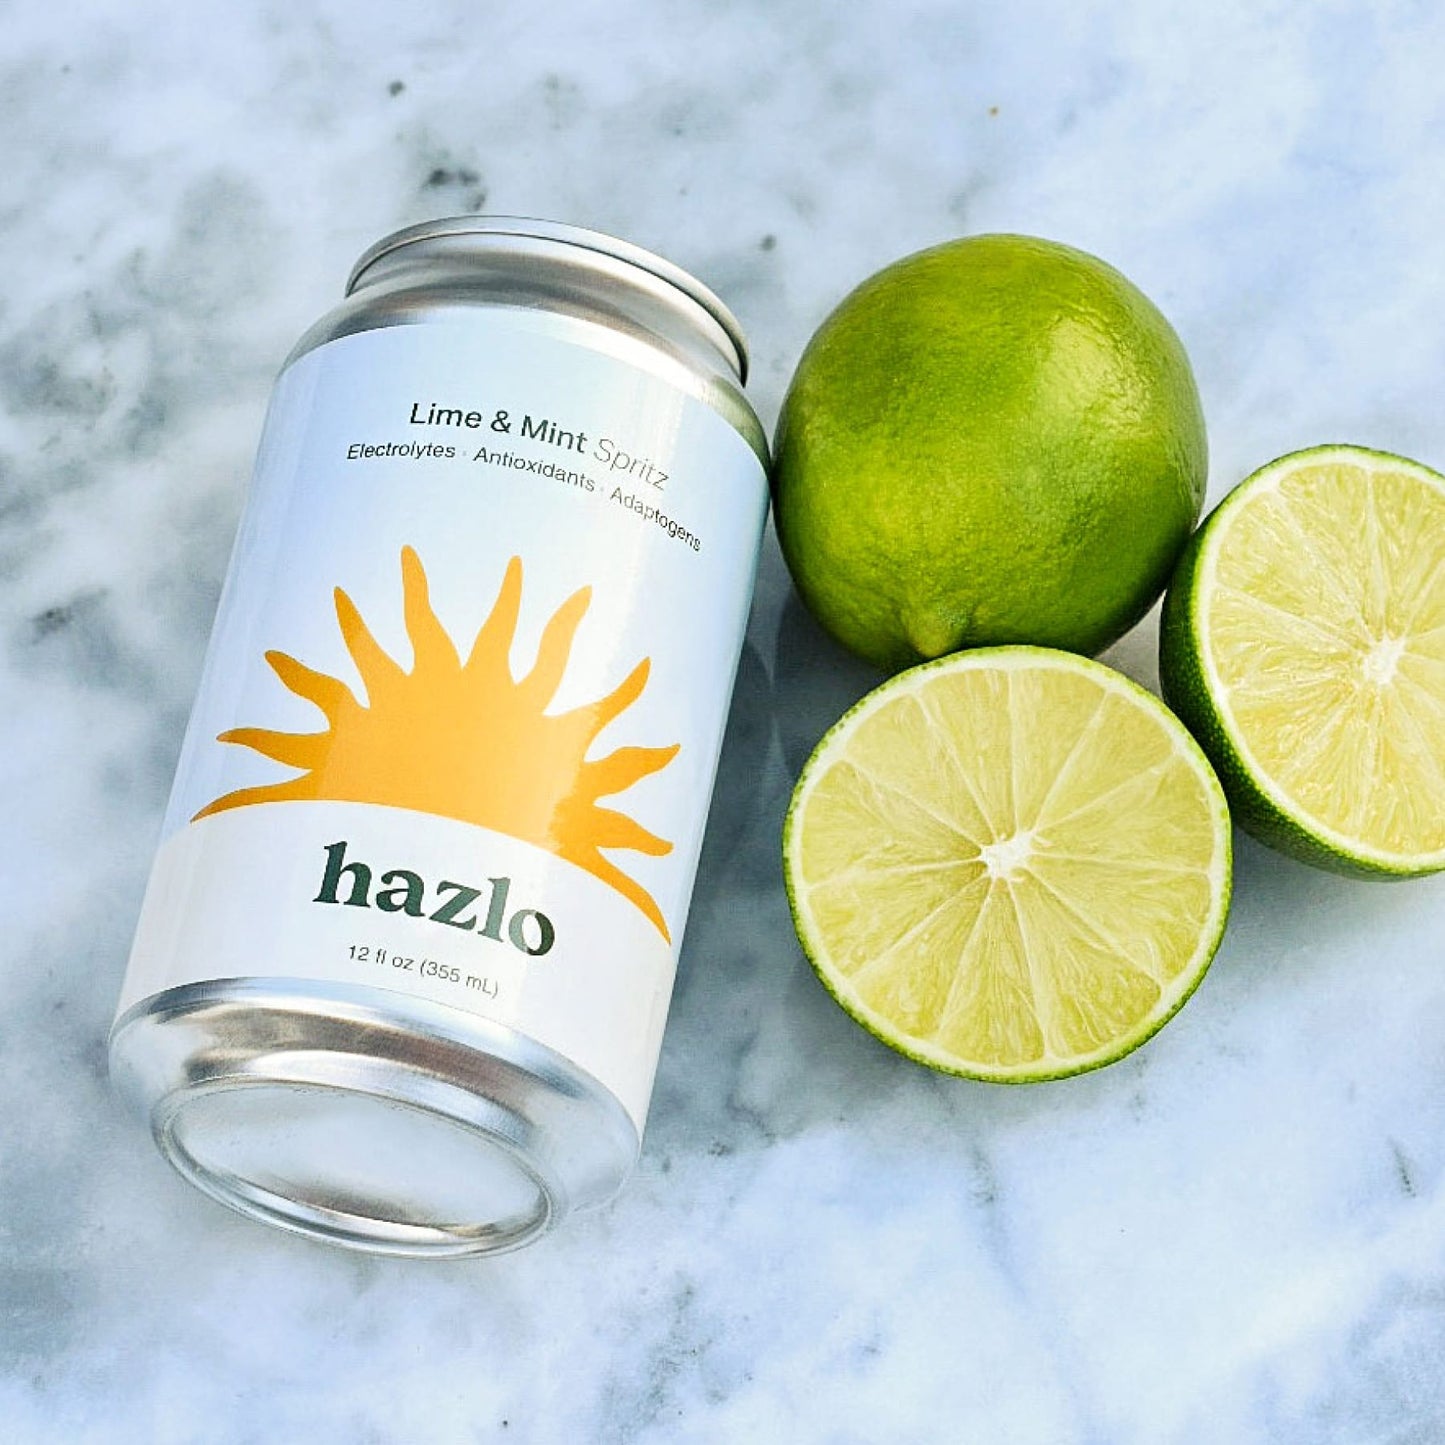 Hazlo - Lime & Mint Spritz - 8oz Cans